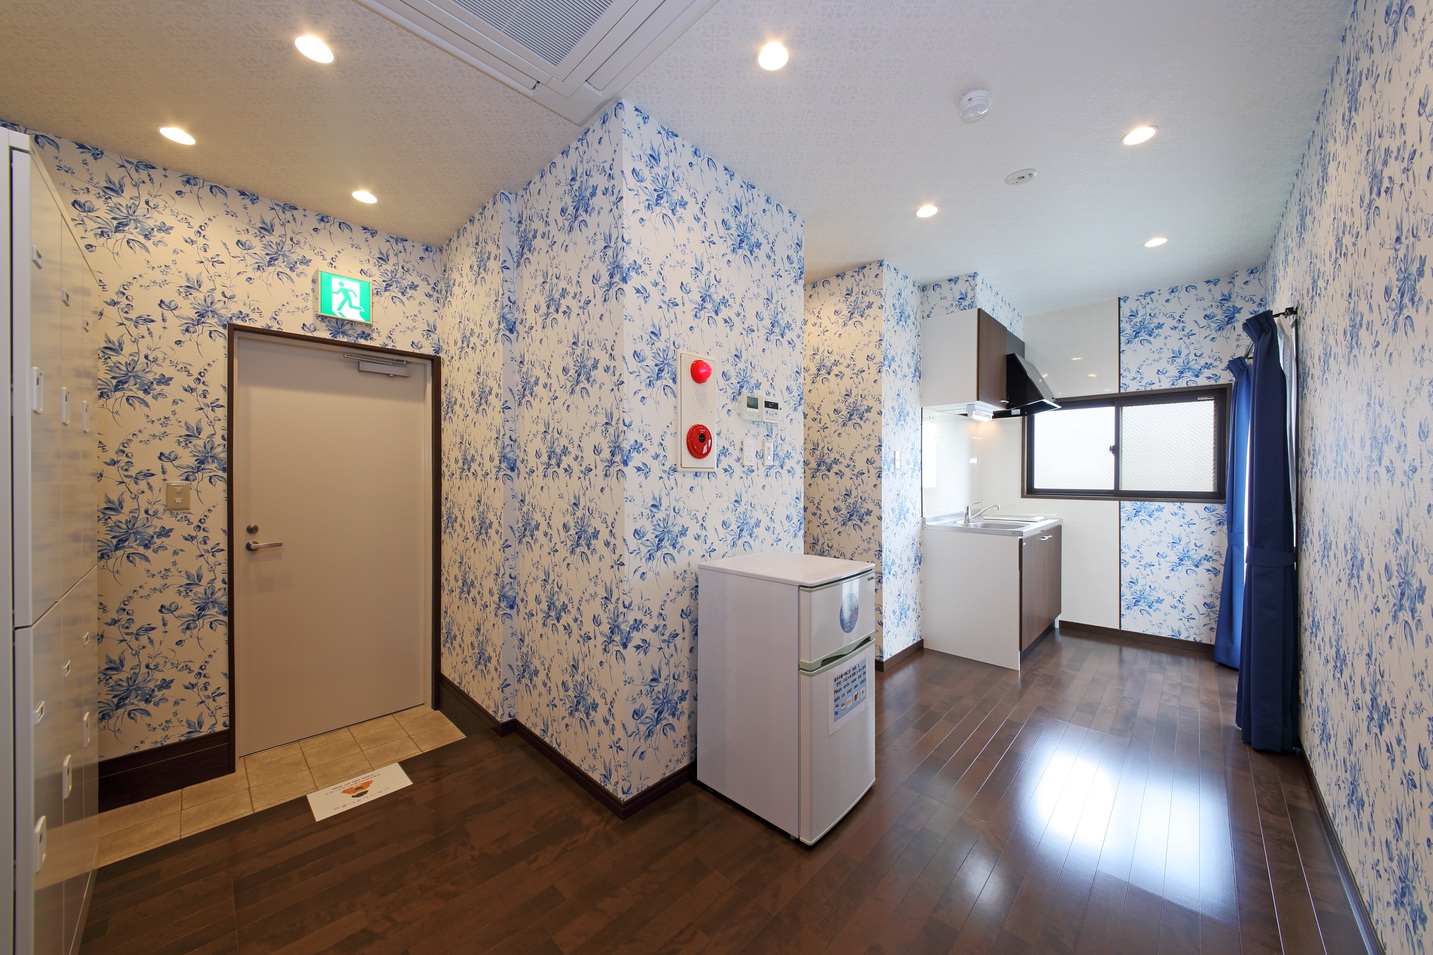 男女共同５階フロア熊本県内情報誌・チラシ設置冷蔵庫・ミニキッチン・湯沸かし器・